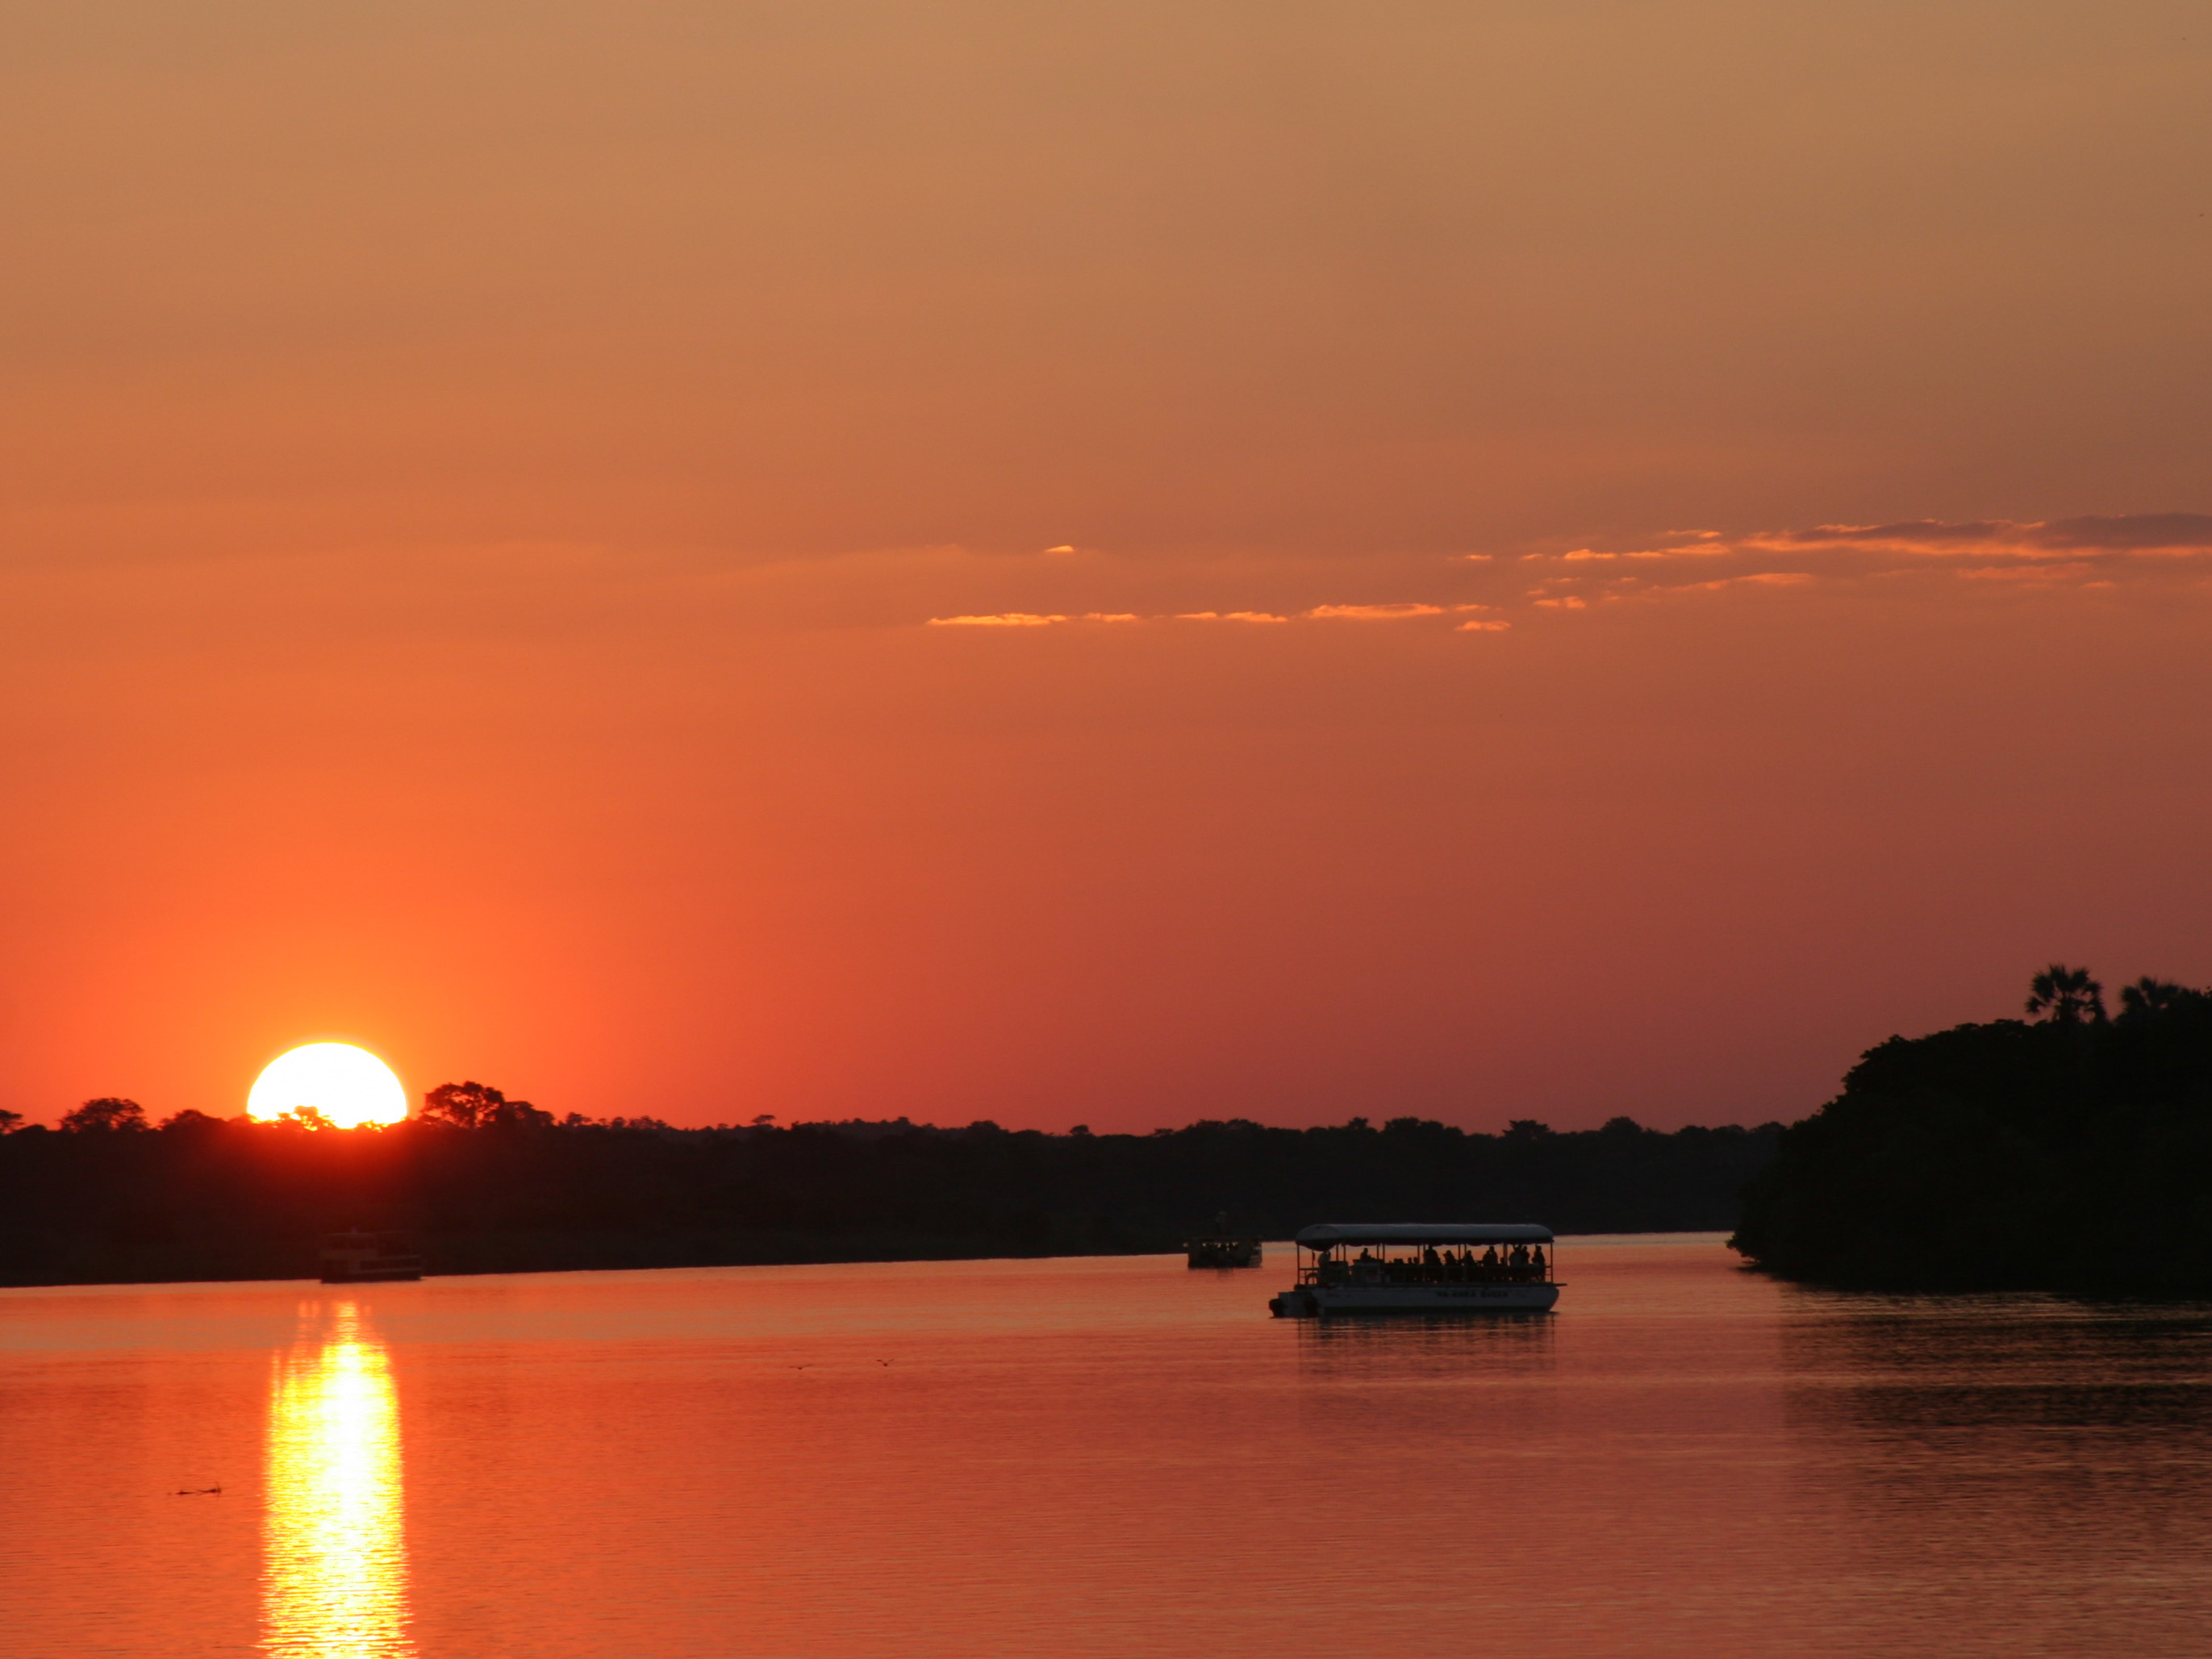 Sunset River Cruise on the Zambezi